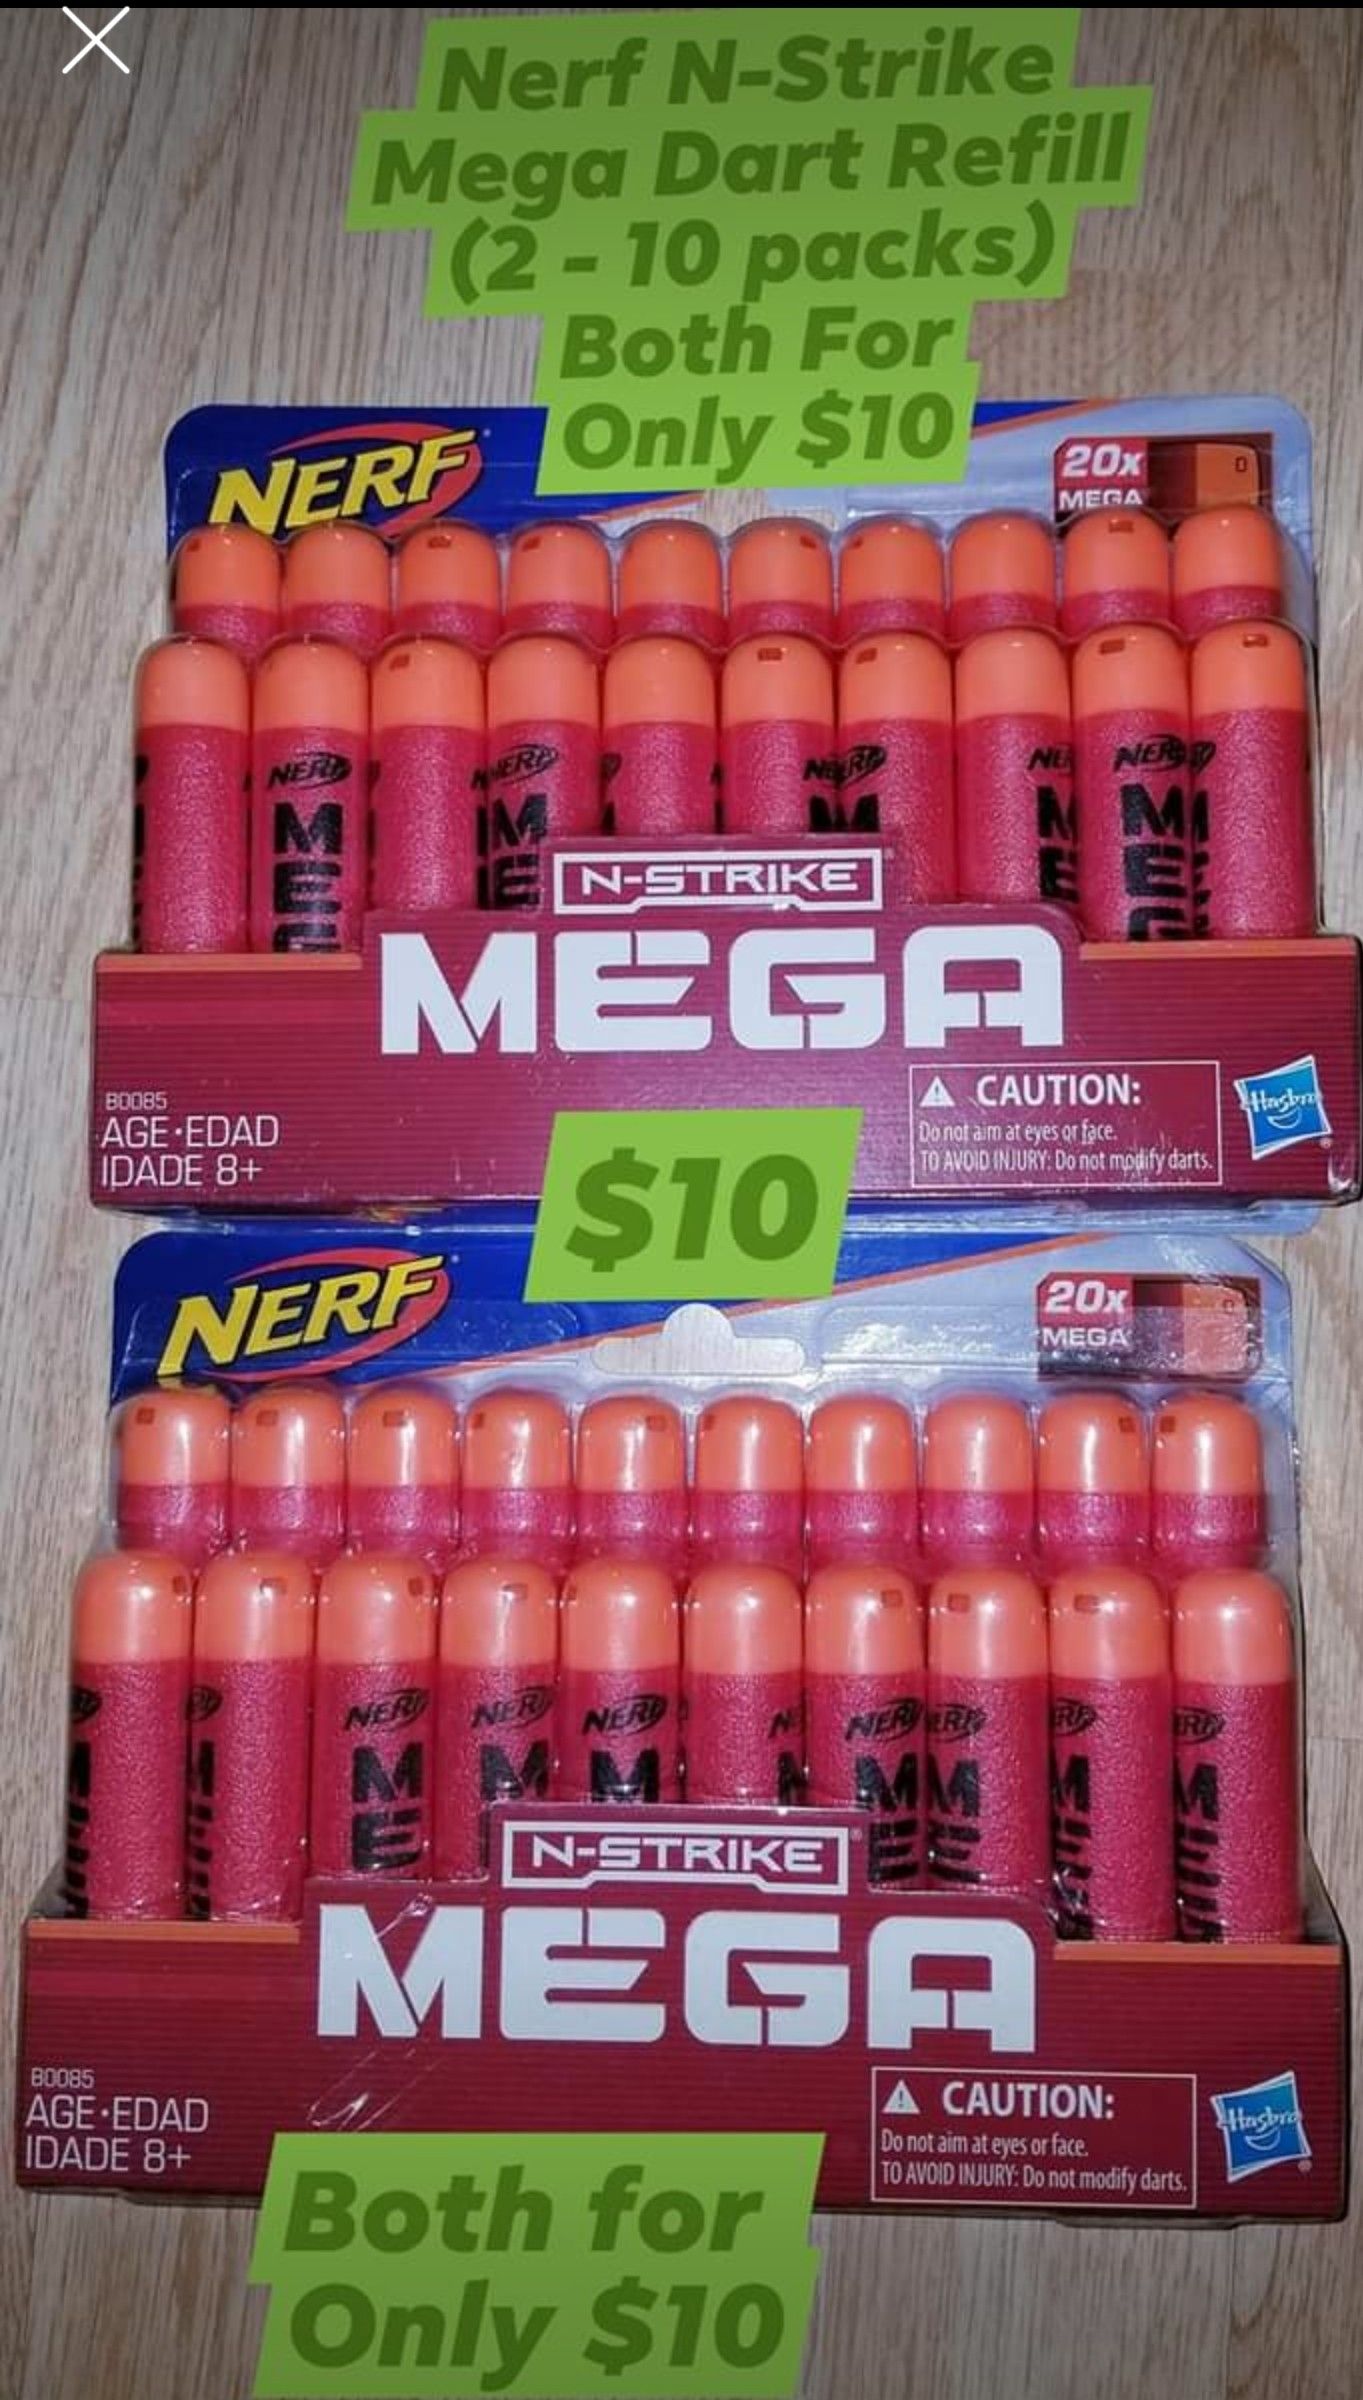 Only $10 for Both🛑Nerf N-Strike Mega Dart Refill (2-10 packs) Brand New Never Opened. Both for $10